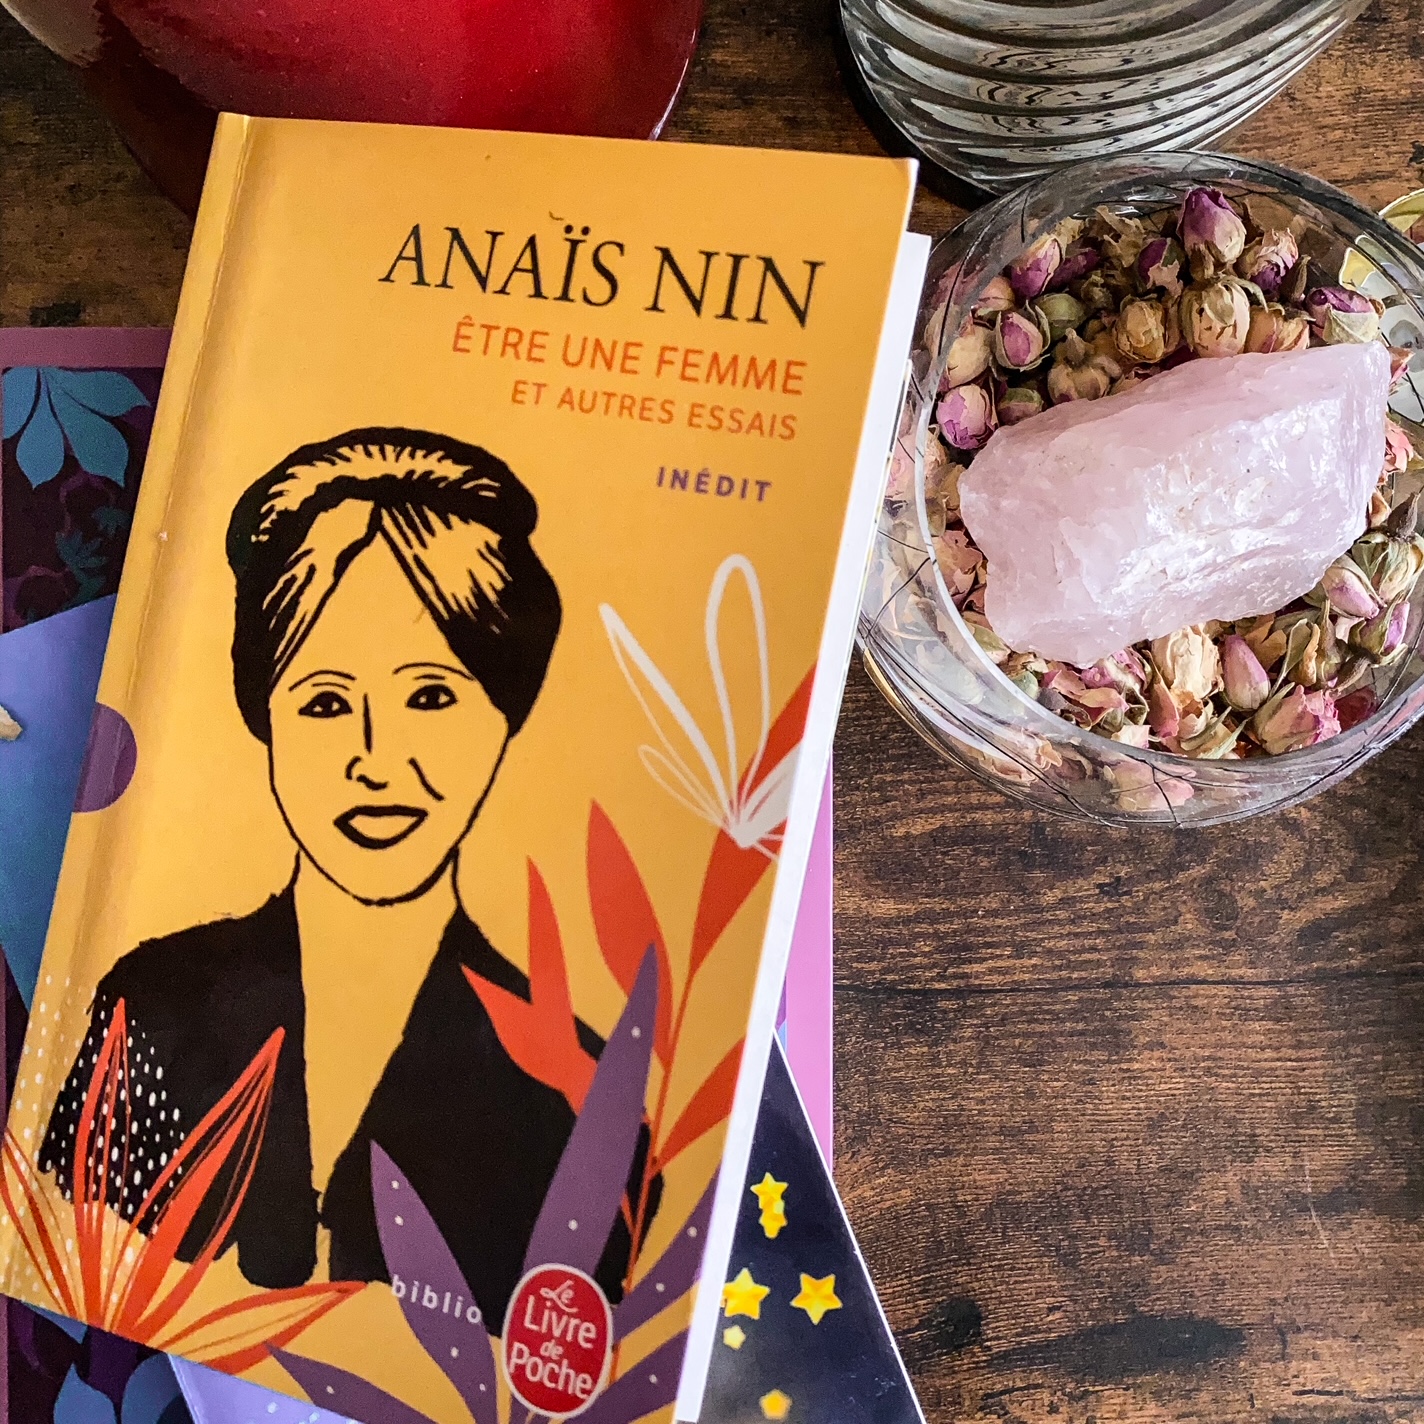 Etre une femme et autres essais, d'Anaïs Nin : l'écriture et la vie